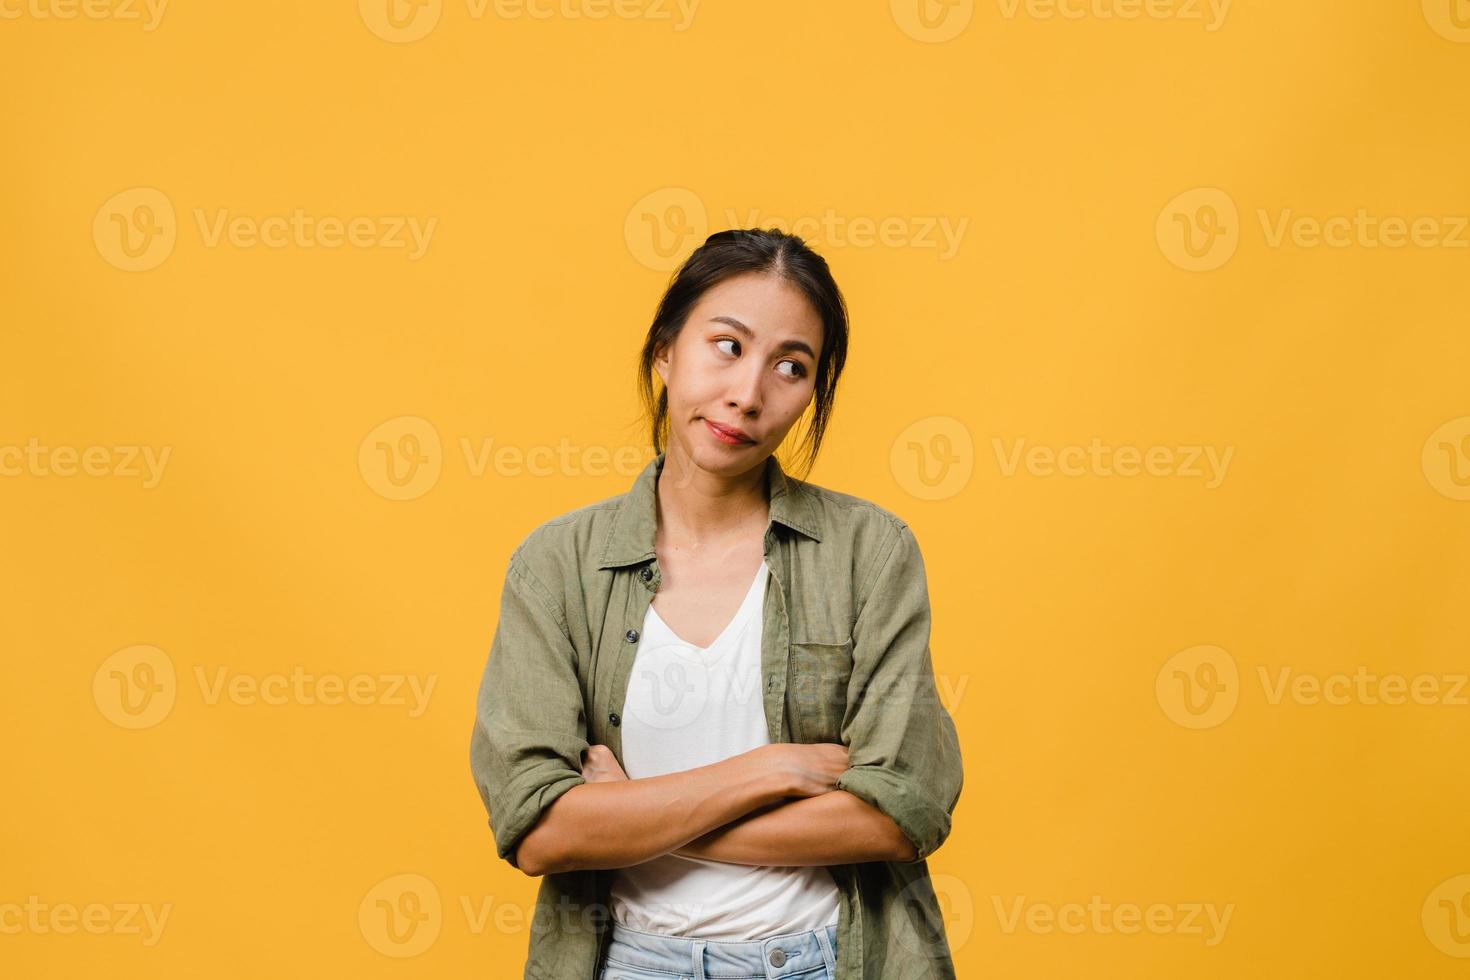 ritratto di giovane donna asiatica con espressione negativa, urla eccitata, pianto emotivo arrabbiato in abbigliamento casual isolato su sfondo giallo con spazio vuoto per la copia. concetto di espressione facciale. foto